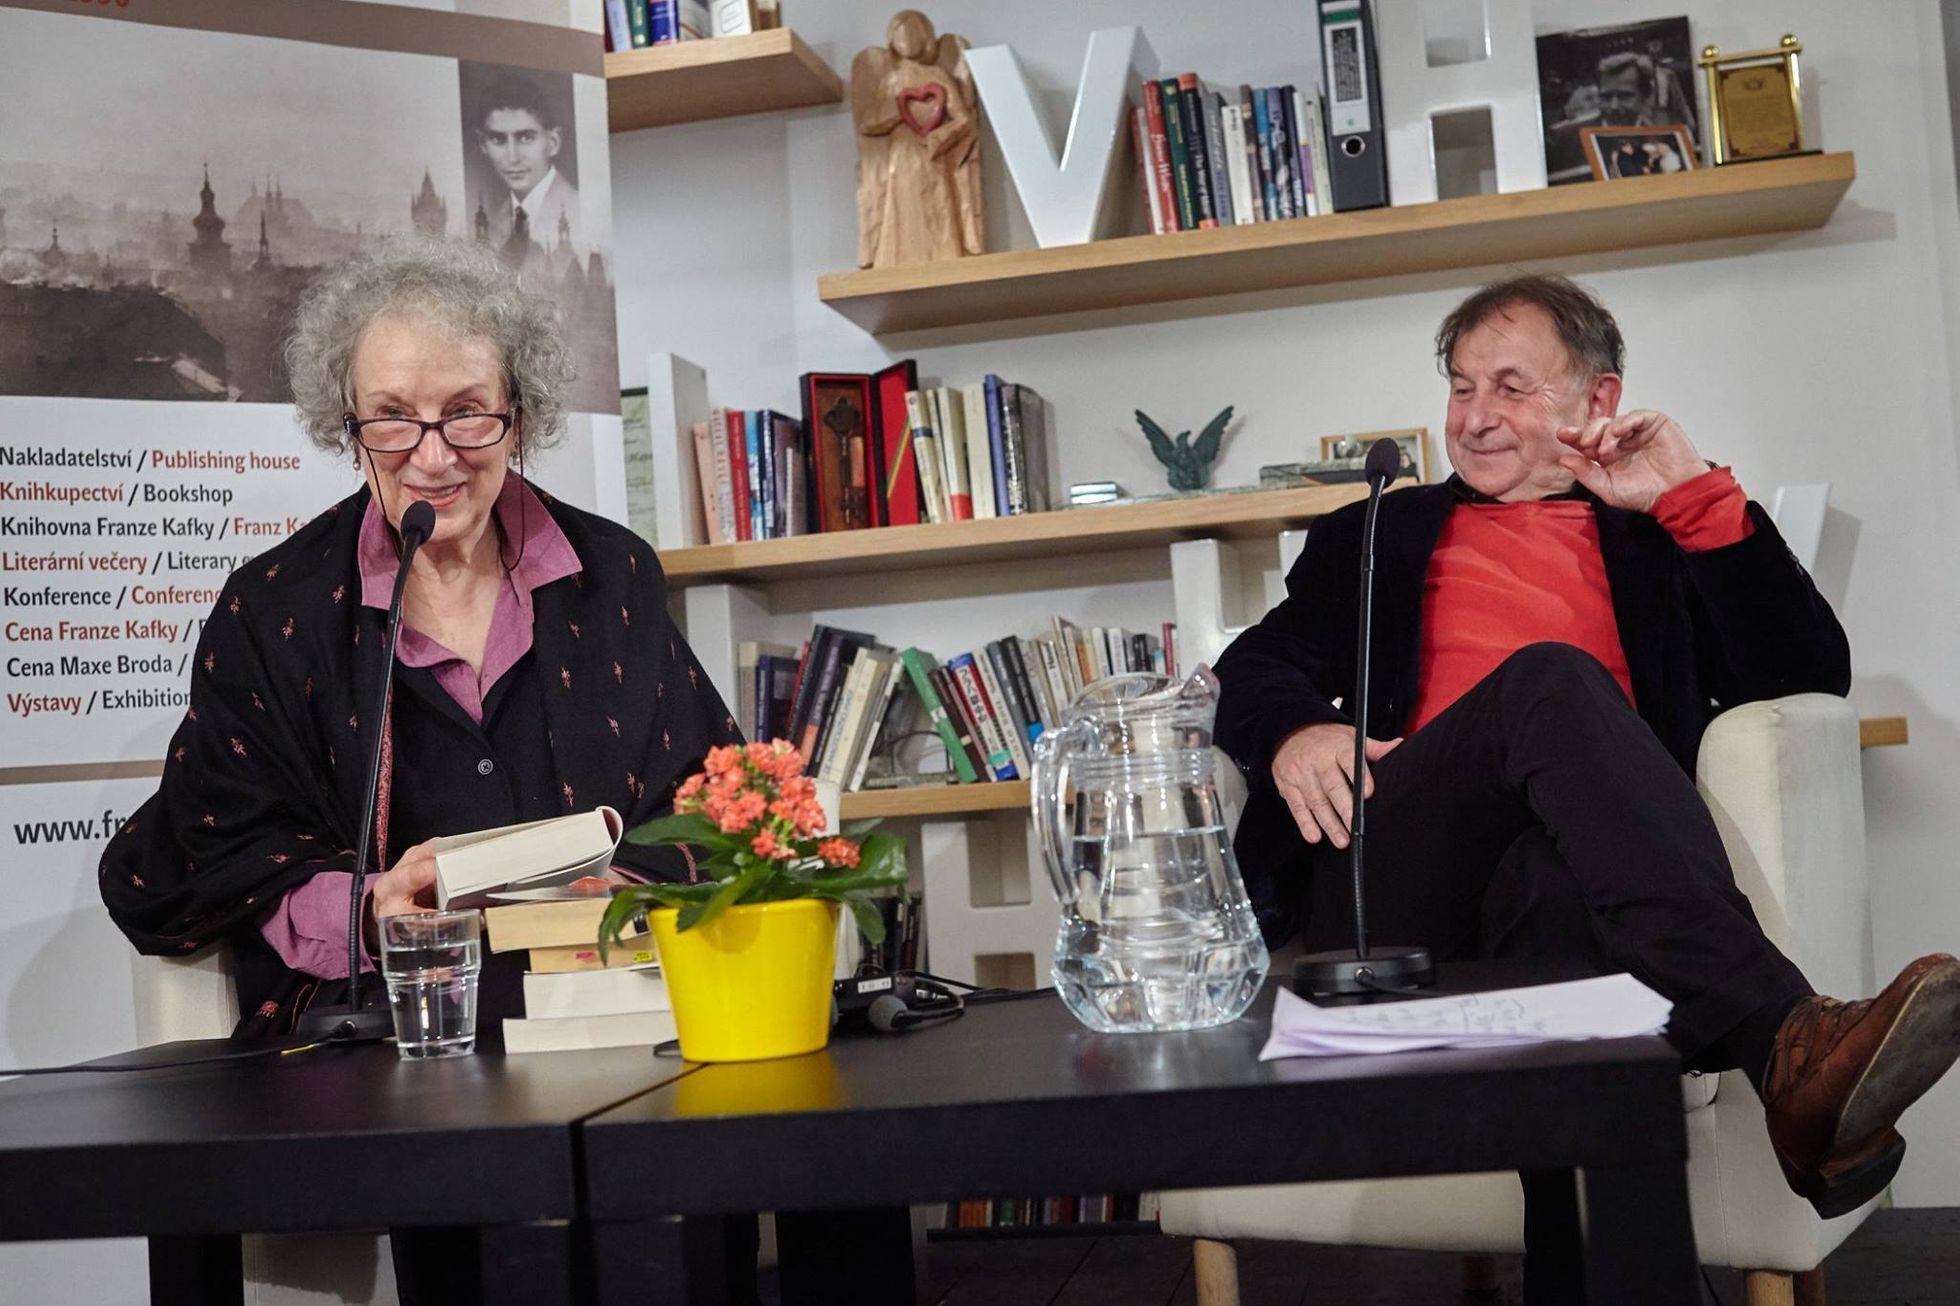 Margaret Atwoodová, Michael Žantovský